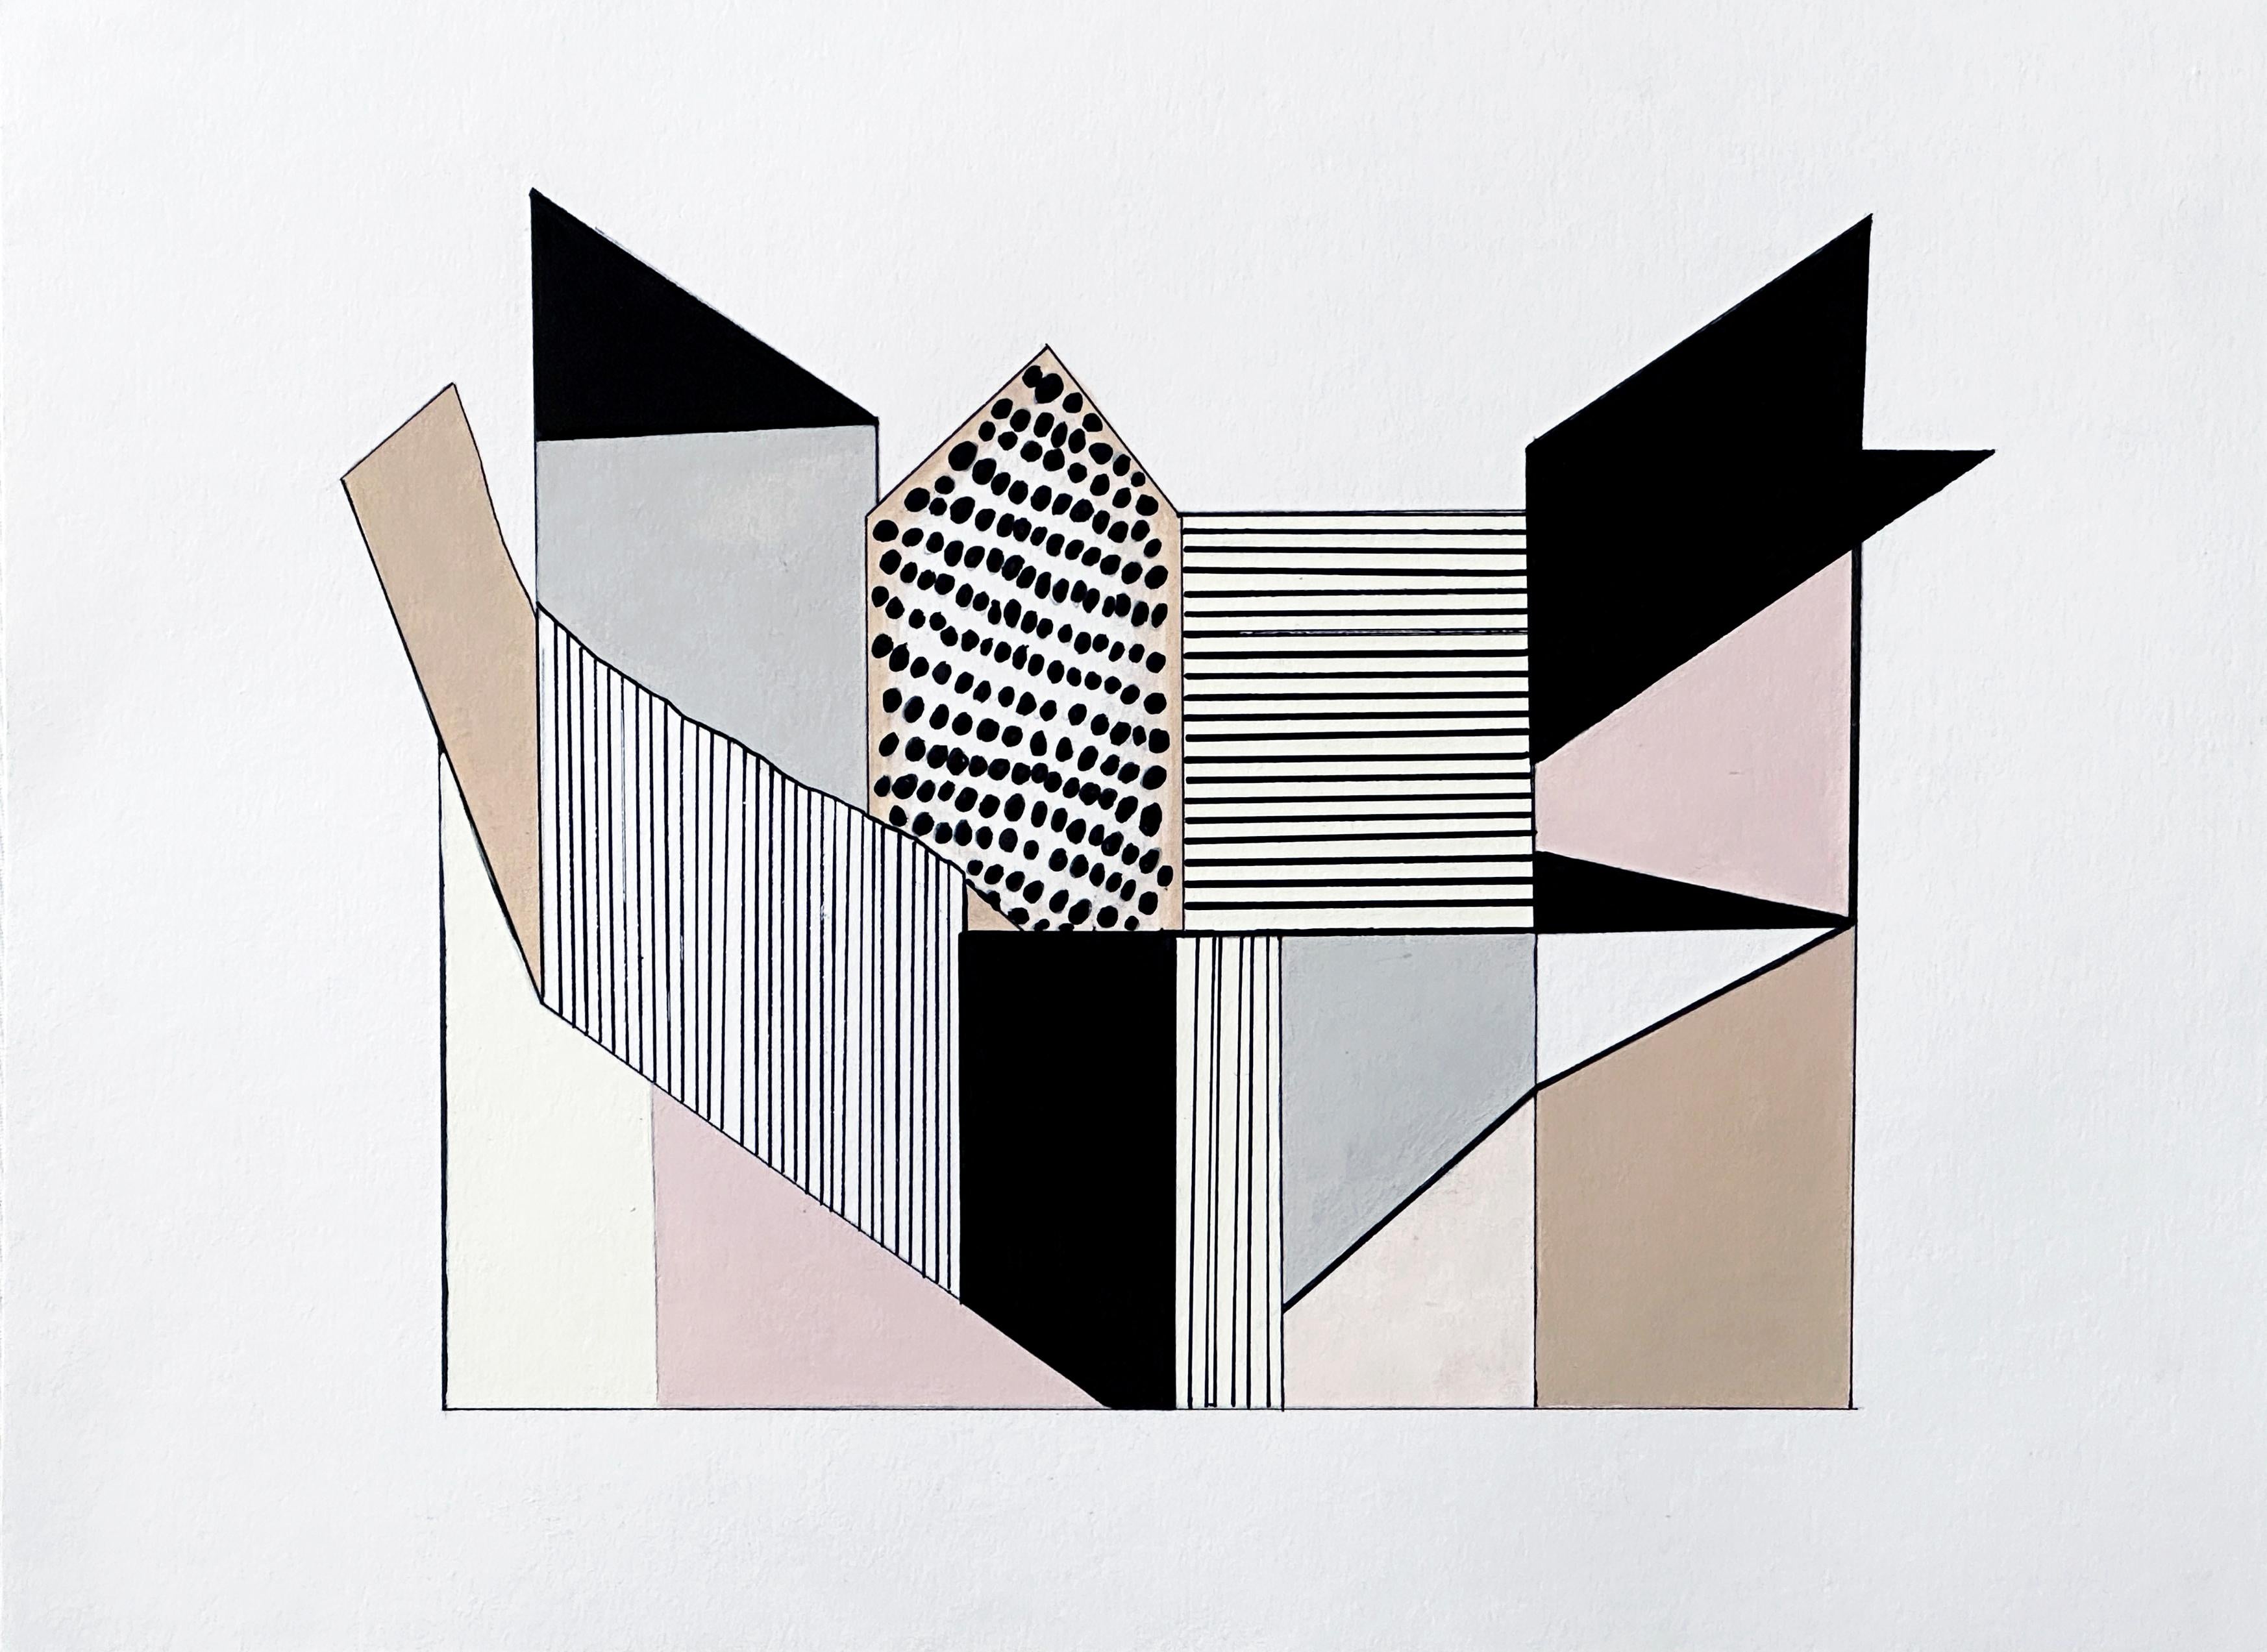 Amanda Andersen Abstract Painting – "Edifice II" Zeitgenössische Zeichnung, abstrakte Geometrie, natürliche Architektur